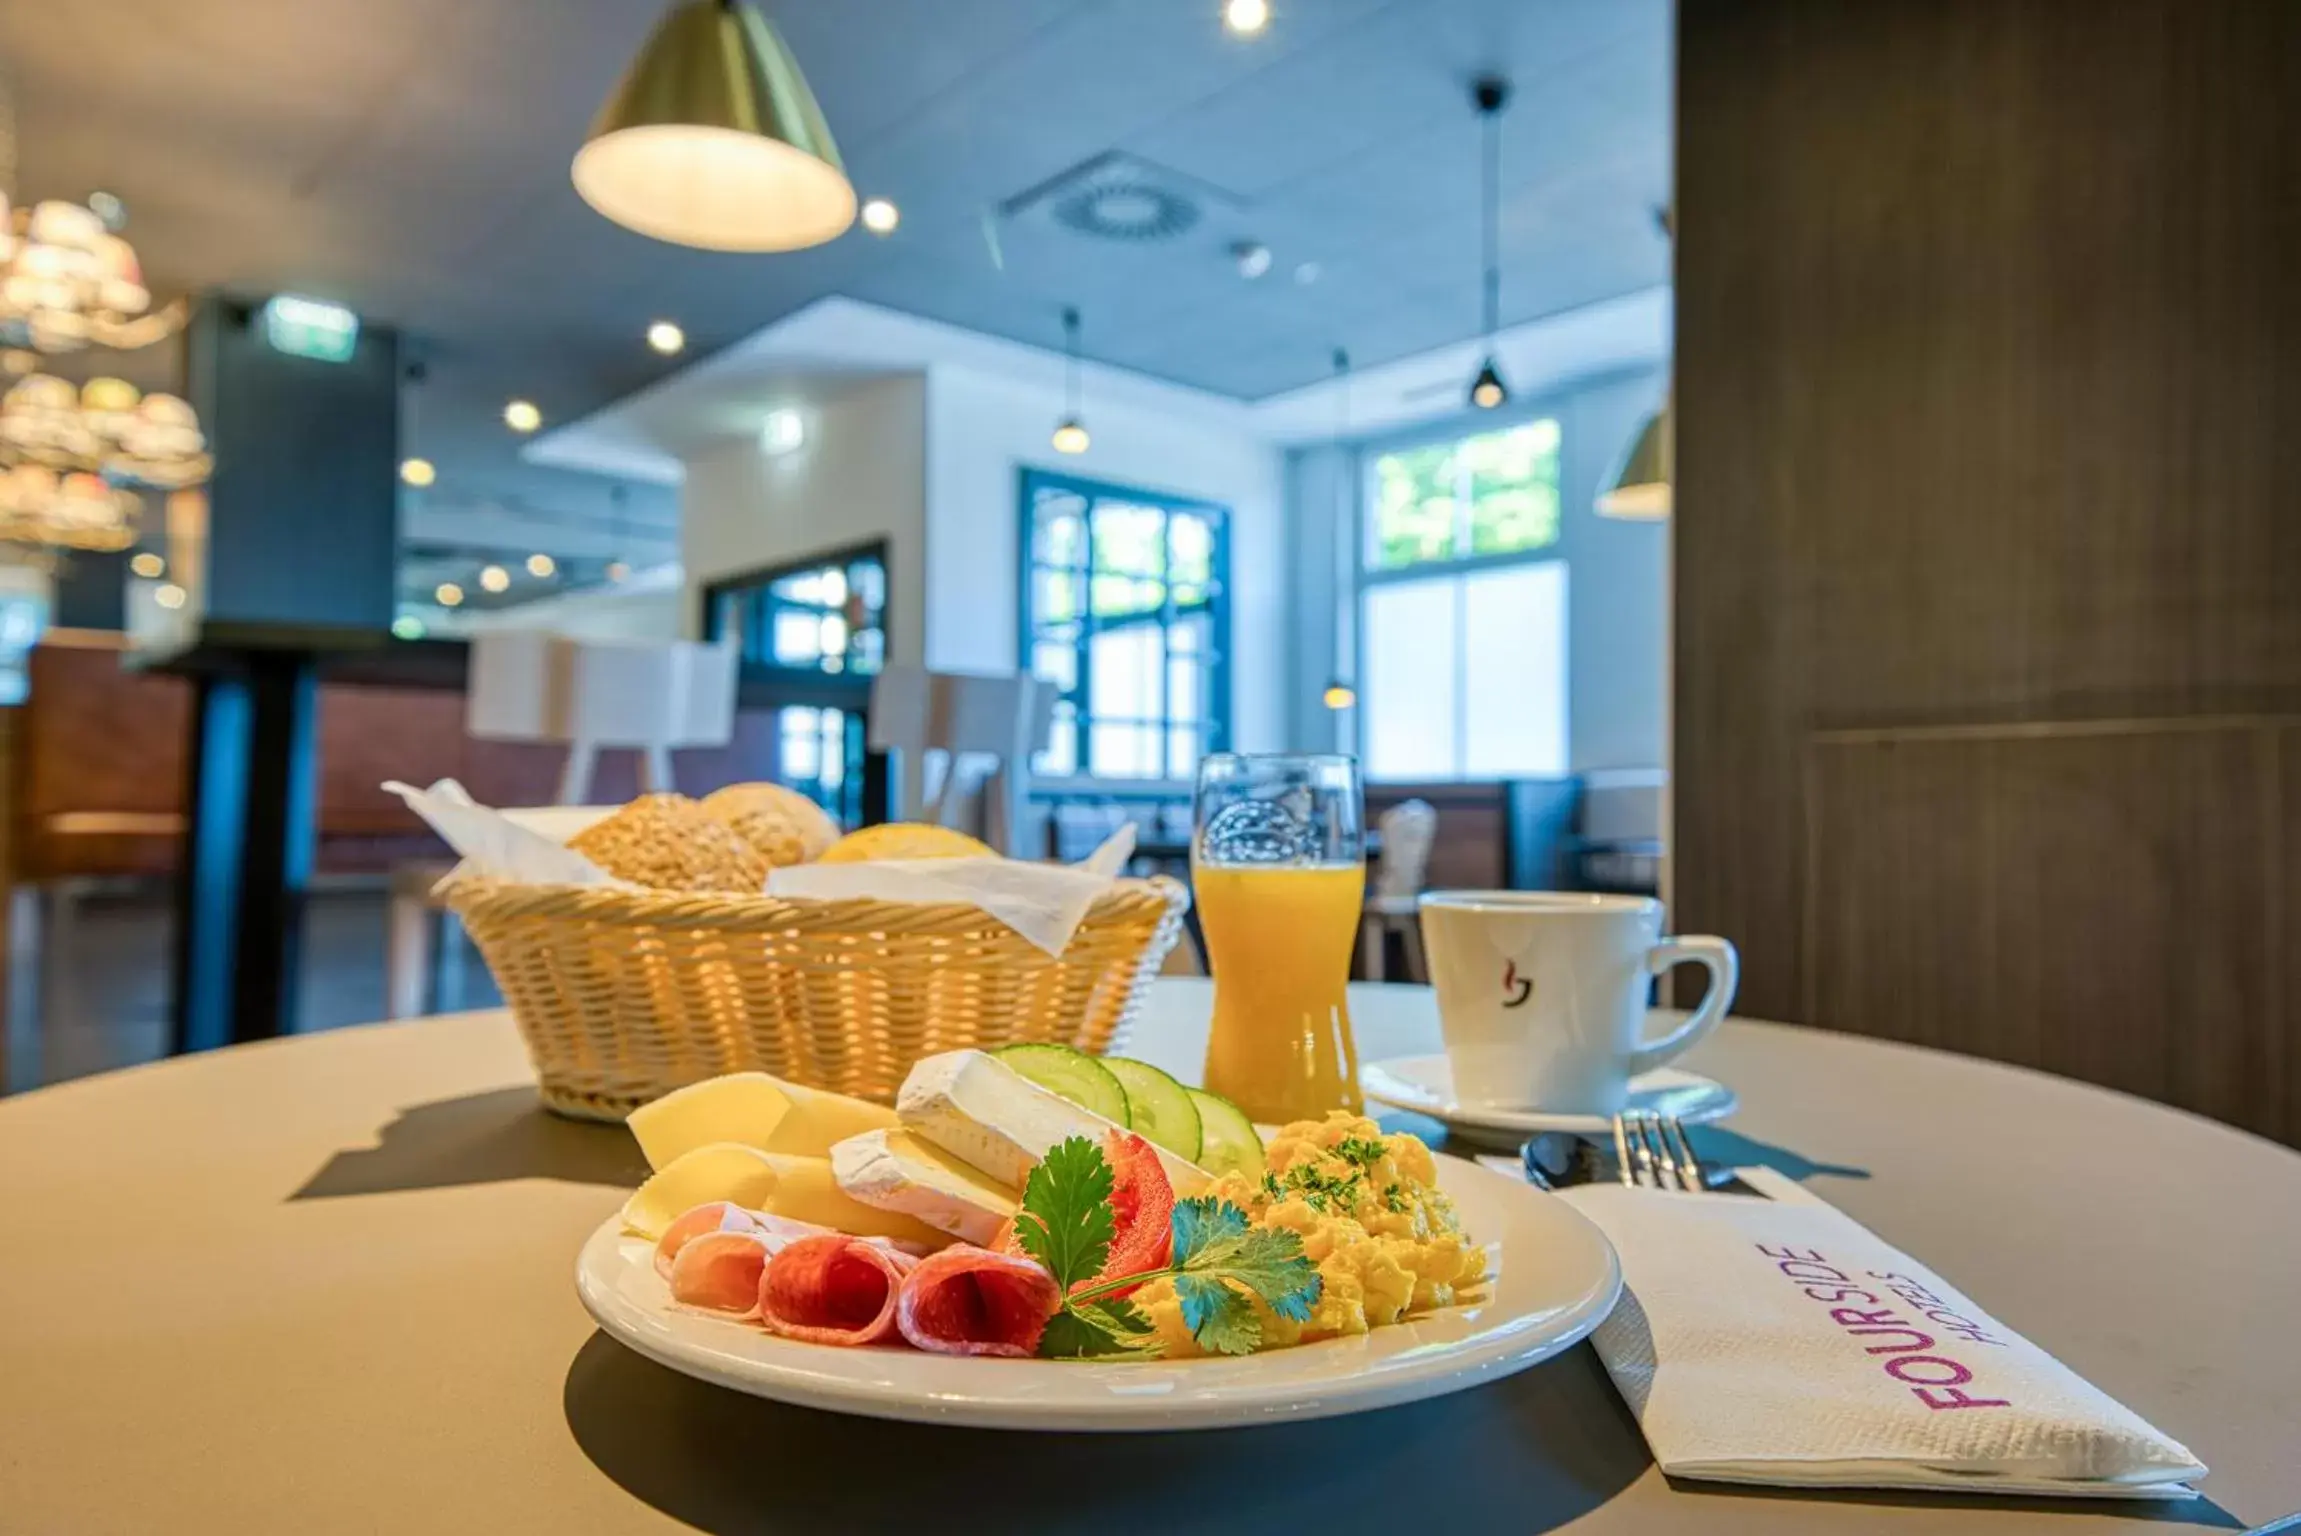 Breakfast in FourSide Hotel Salzburg